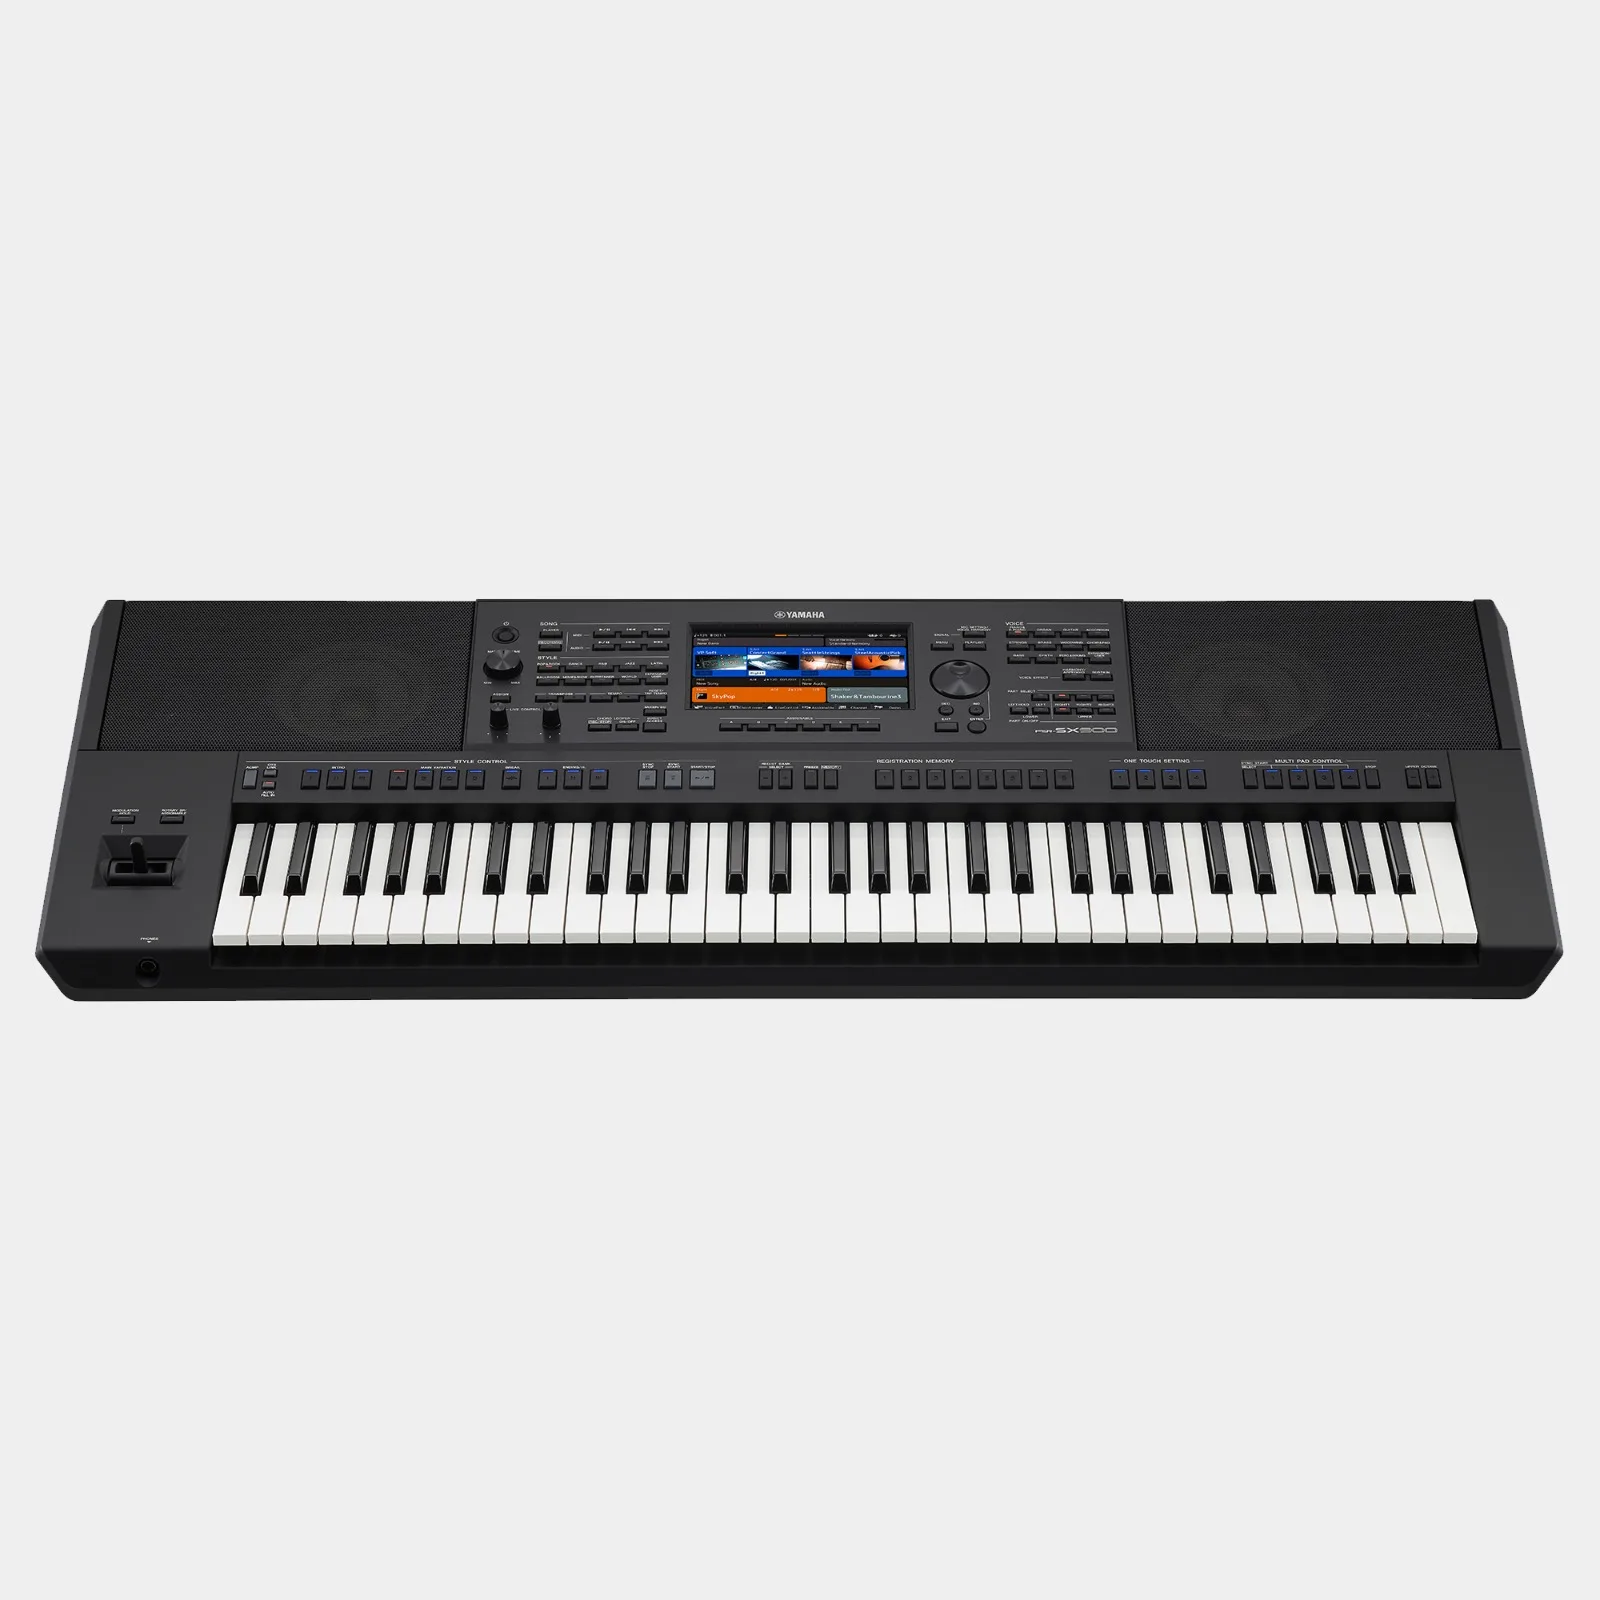 

Большая промо-акция купи 2 ПОЛУЧИ 1 бесплатно YamahaS PSR SX900 S975 SX700 набор Делюкс клавиатуры пианино